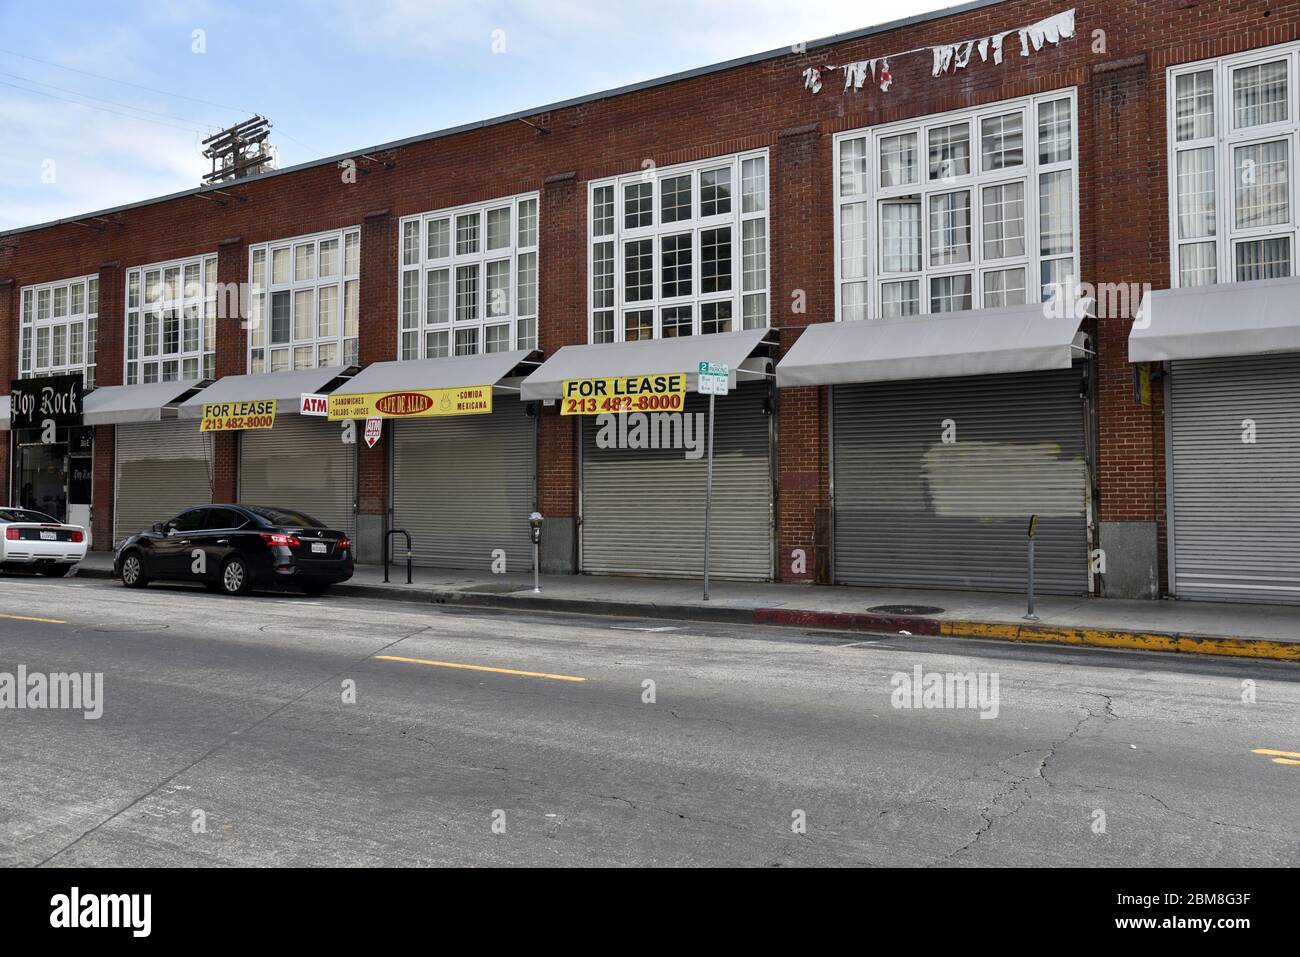 Los Angeles, CA/USA - 28 avril 2020 : la quarantaine du coronavirus force les entreprises à fermer, car des panneaux de location apparaissent sur les vitrines de vente au détail Banque D'Images